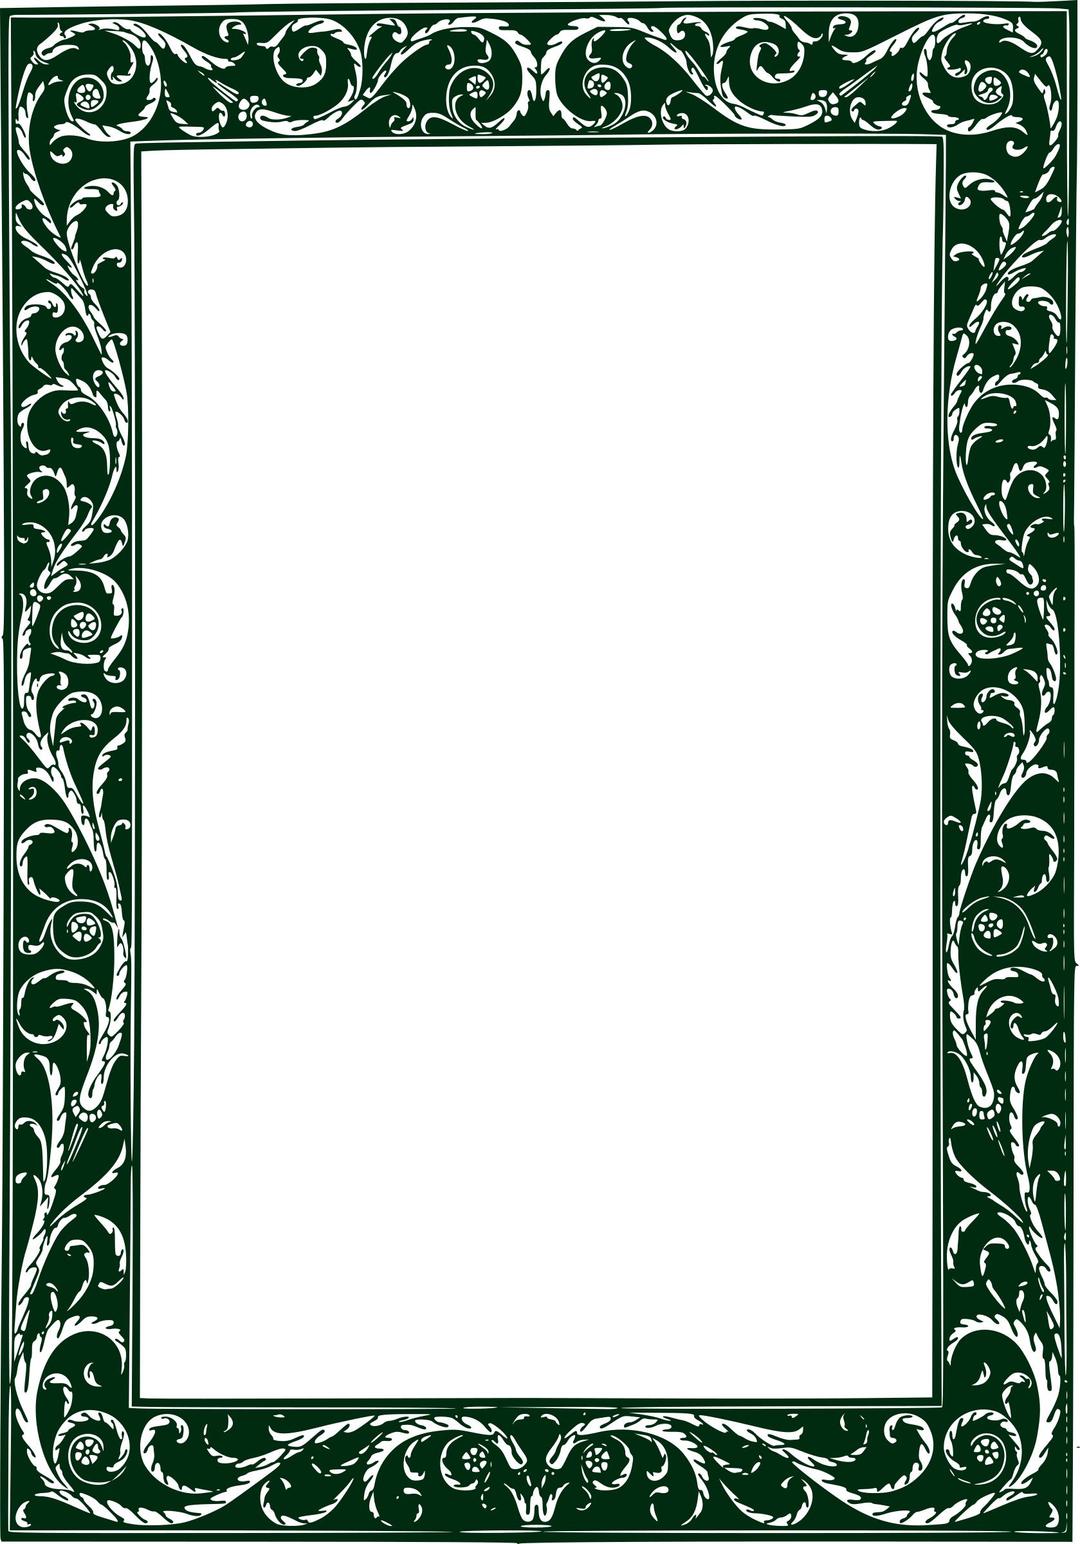 Twisted Vines Frame - Green png transparent